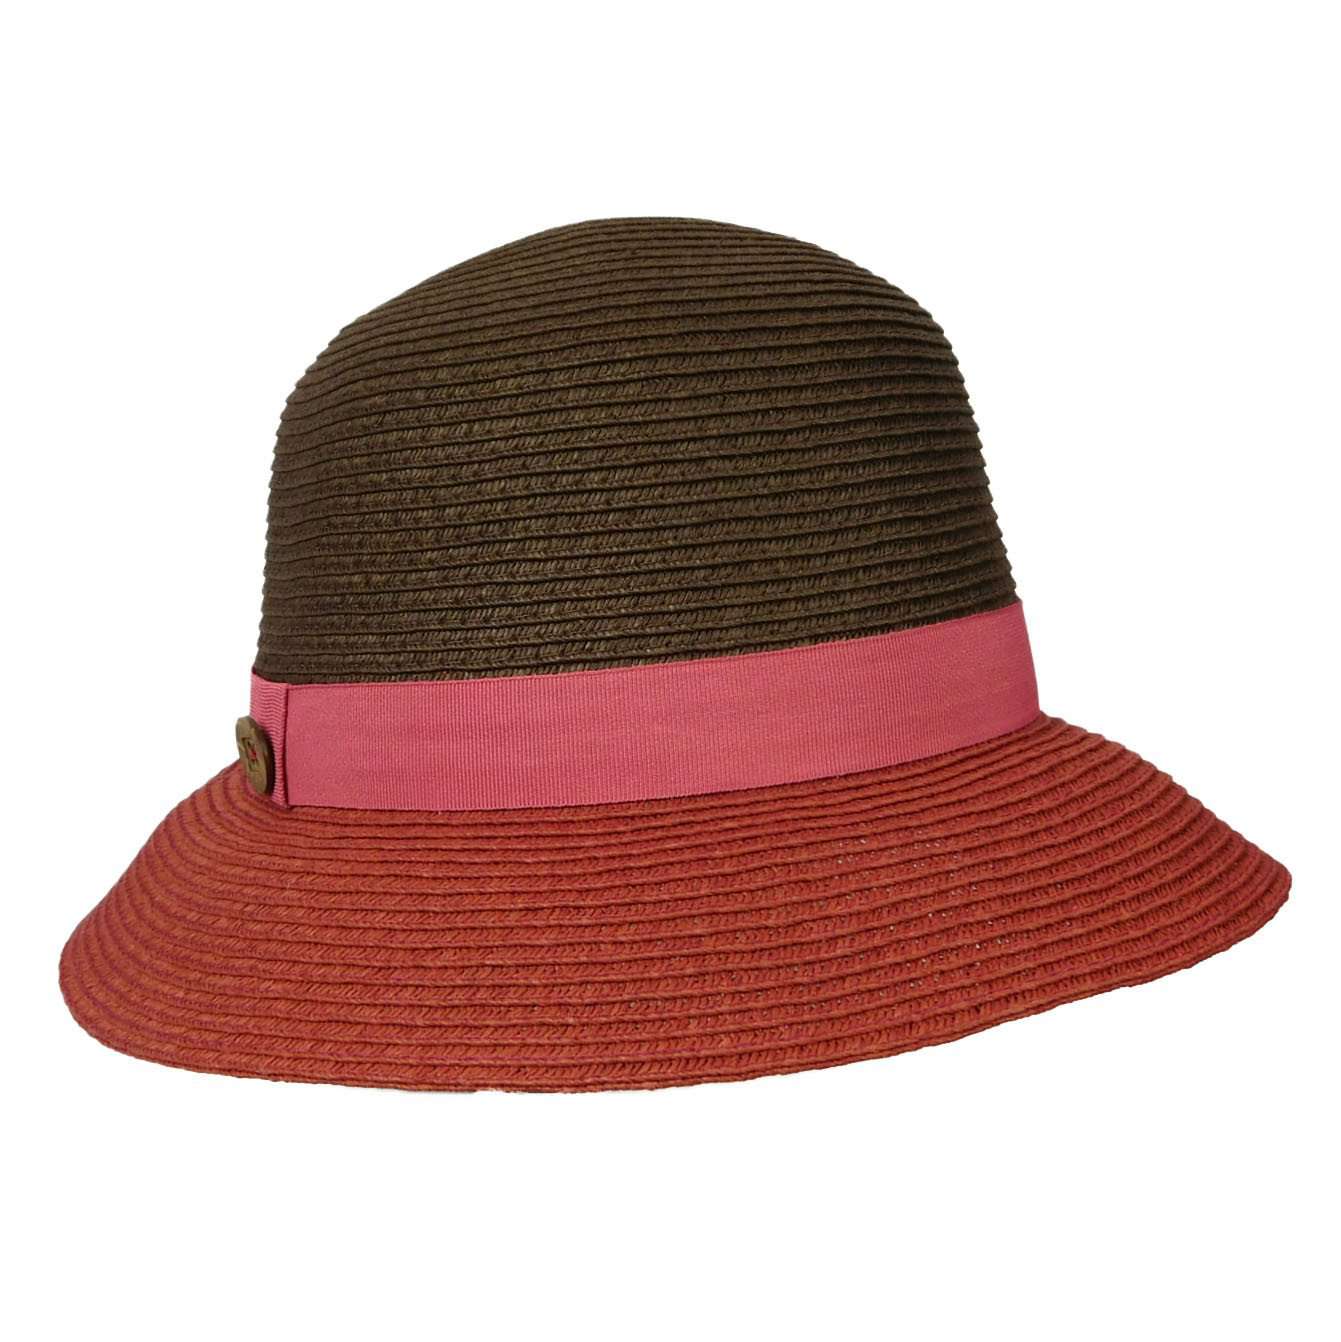 Two Tone Bucket Hat, Wide Brim Hat - SetarTrading Hats 